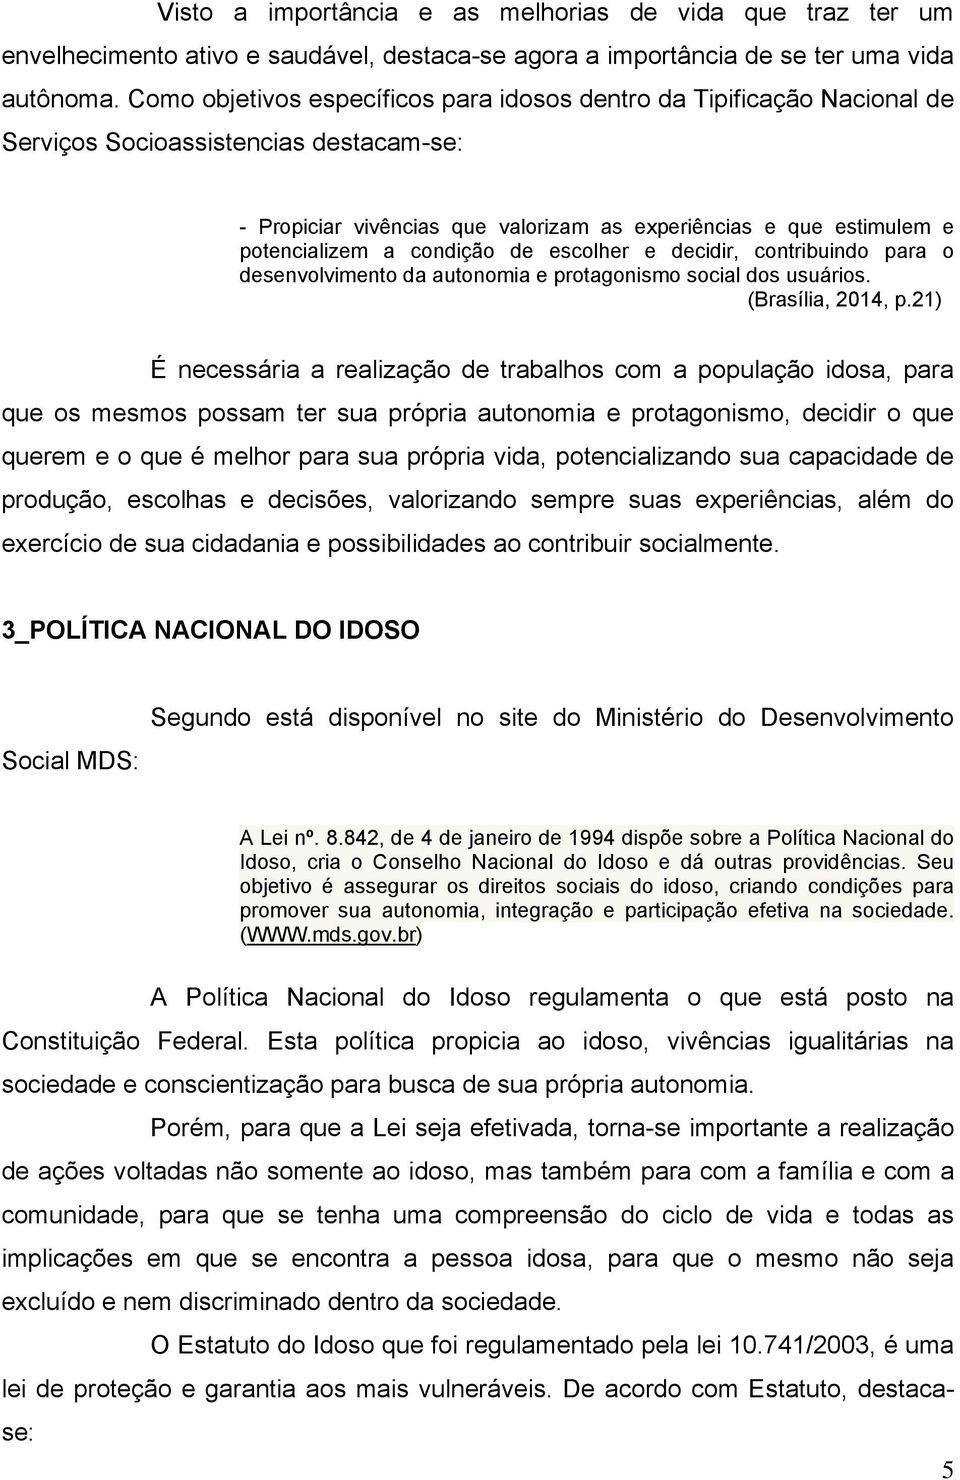 condição de escolher e decidir, contribuindo para o desenvolvimento da autonomia e protagonismo social dos usuários. (Brasília, 2014, p.